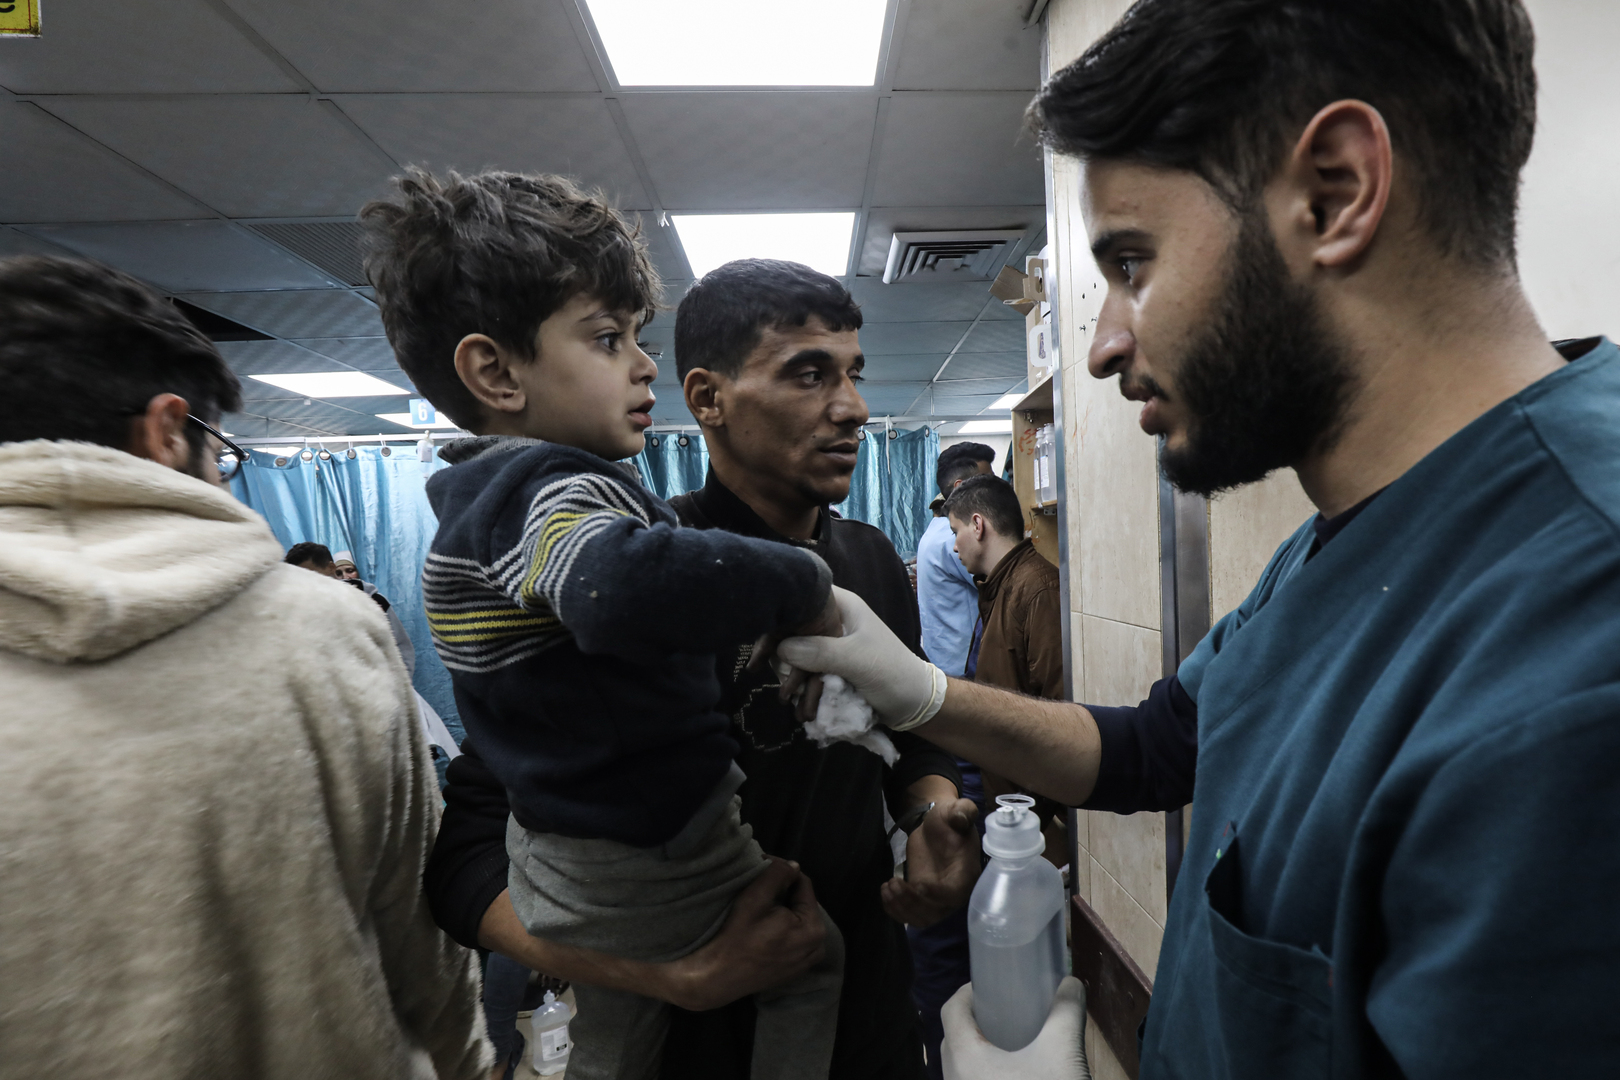 استشاري أمراض تنفسية أردني: حرب غزة تهدد المنطقة العربية بمرض السل